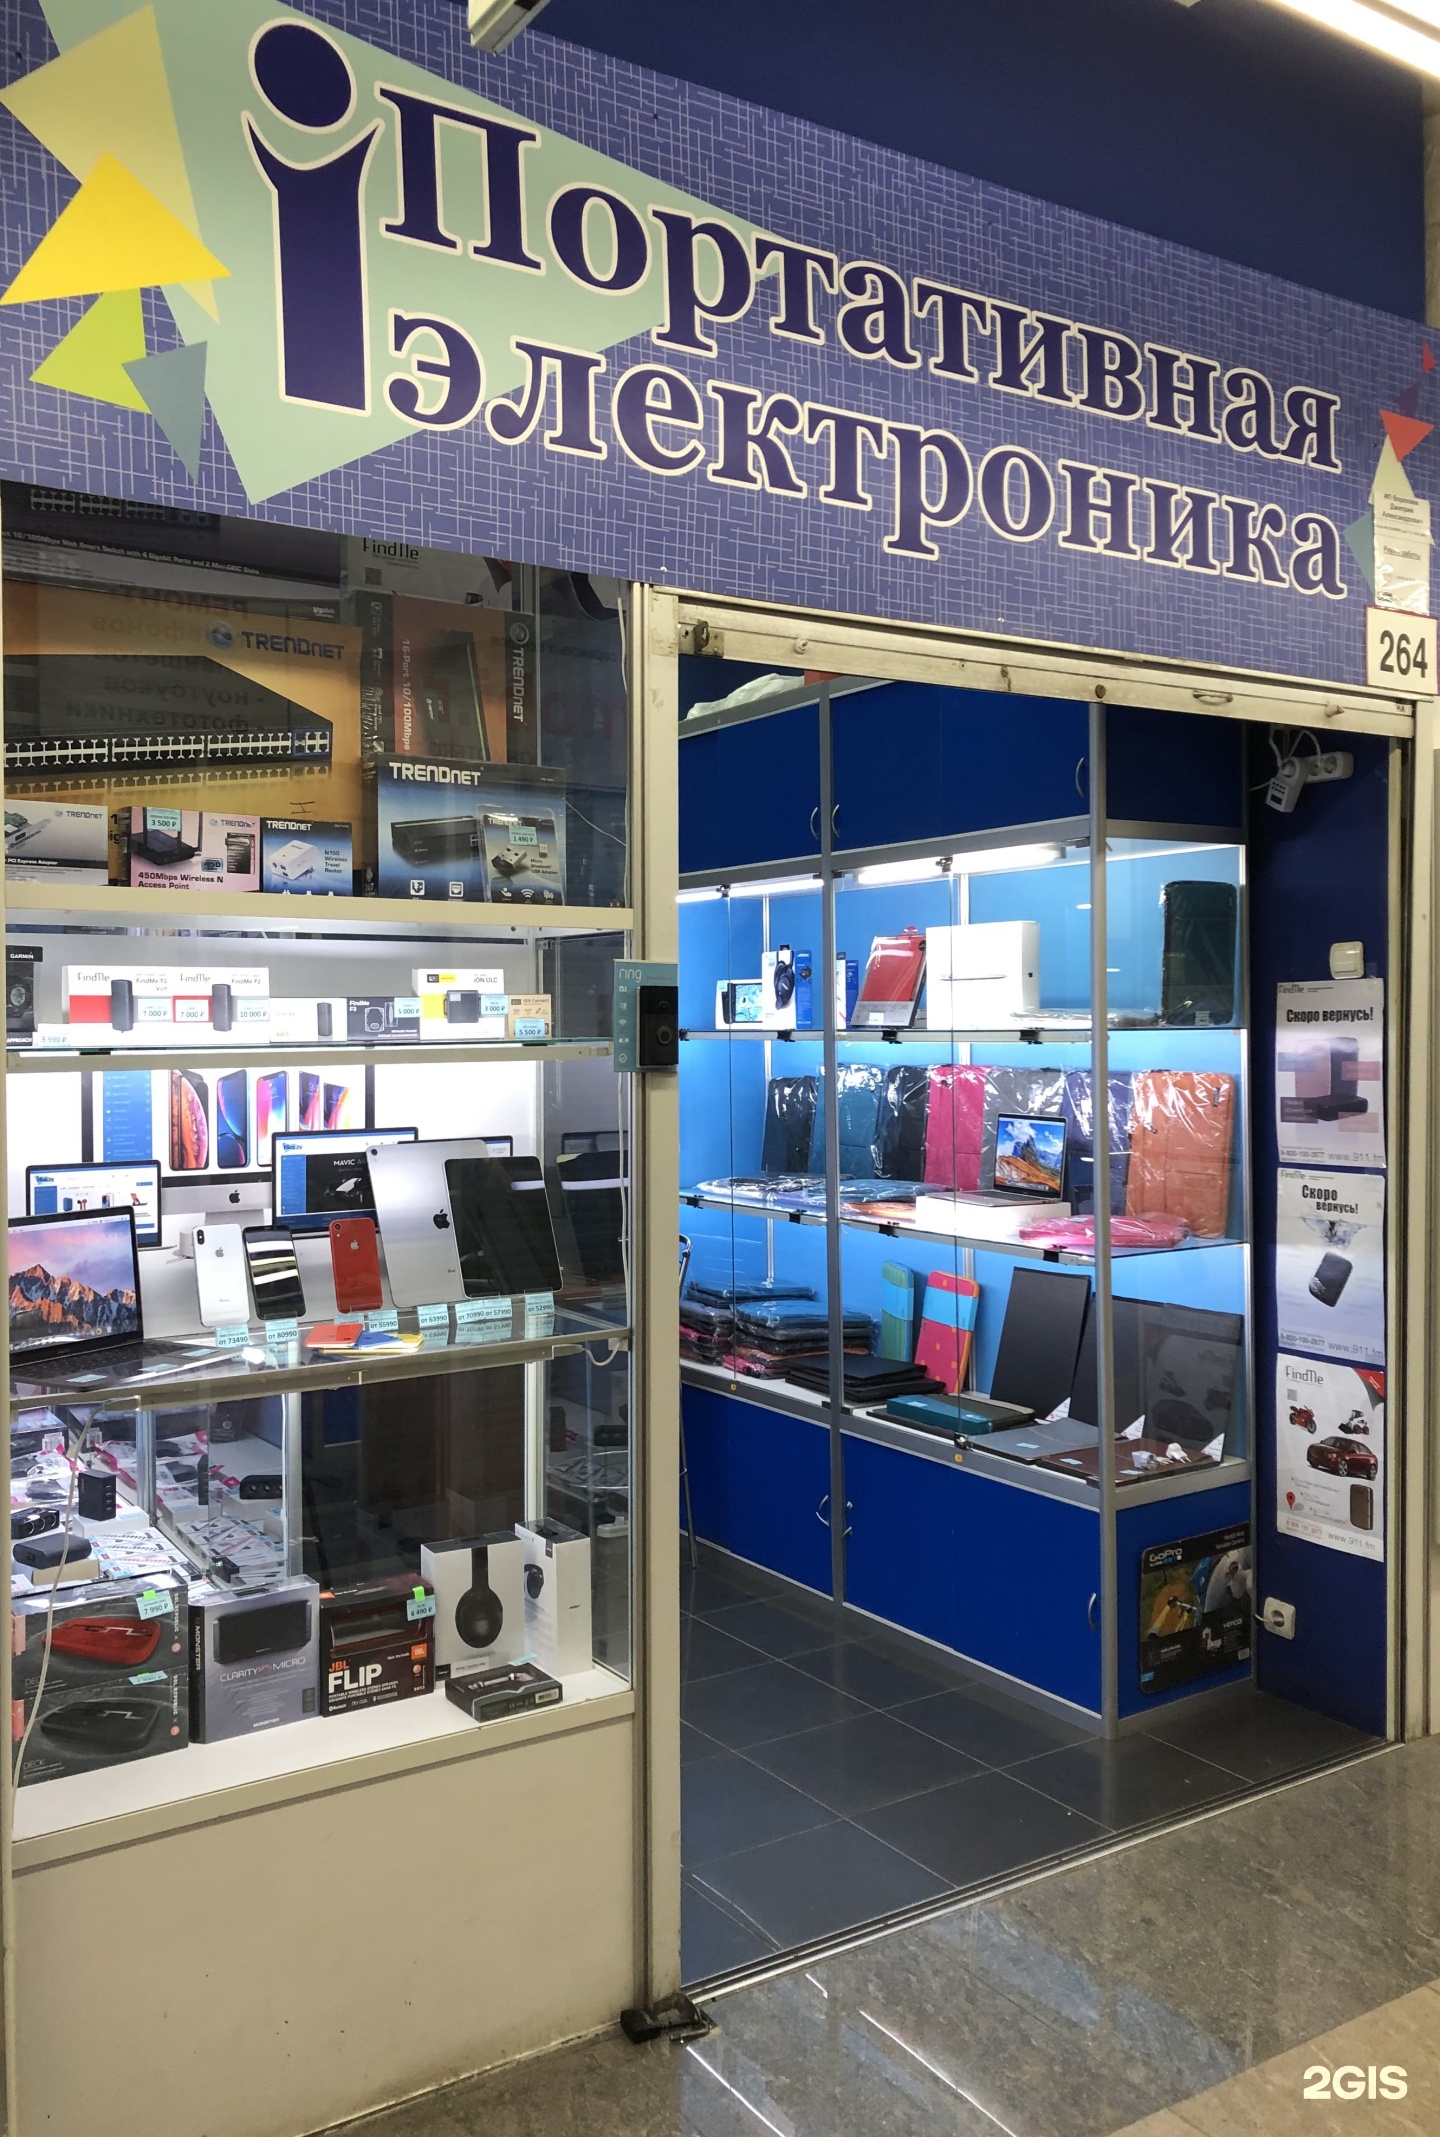 Интернет Магазин Цифровой Техники Москва